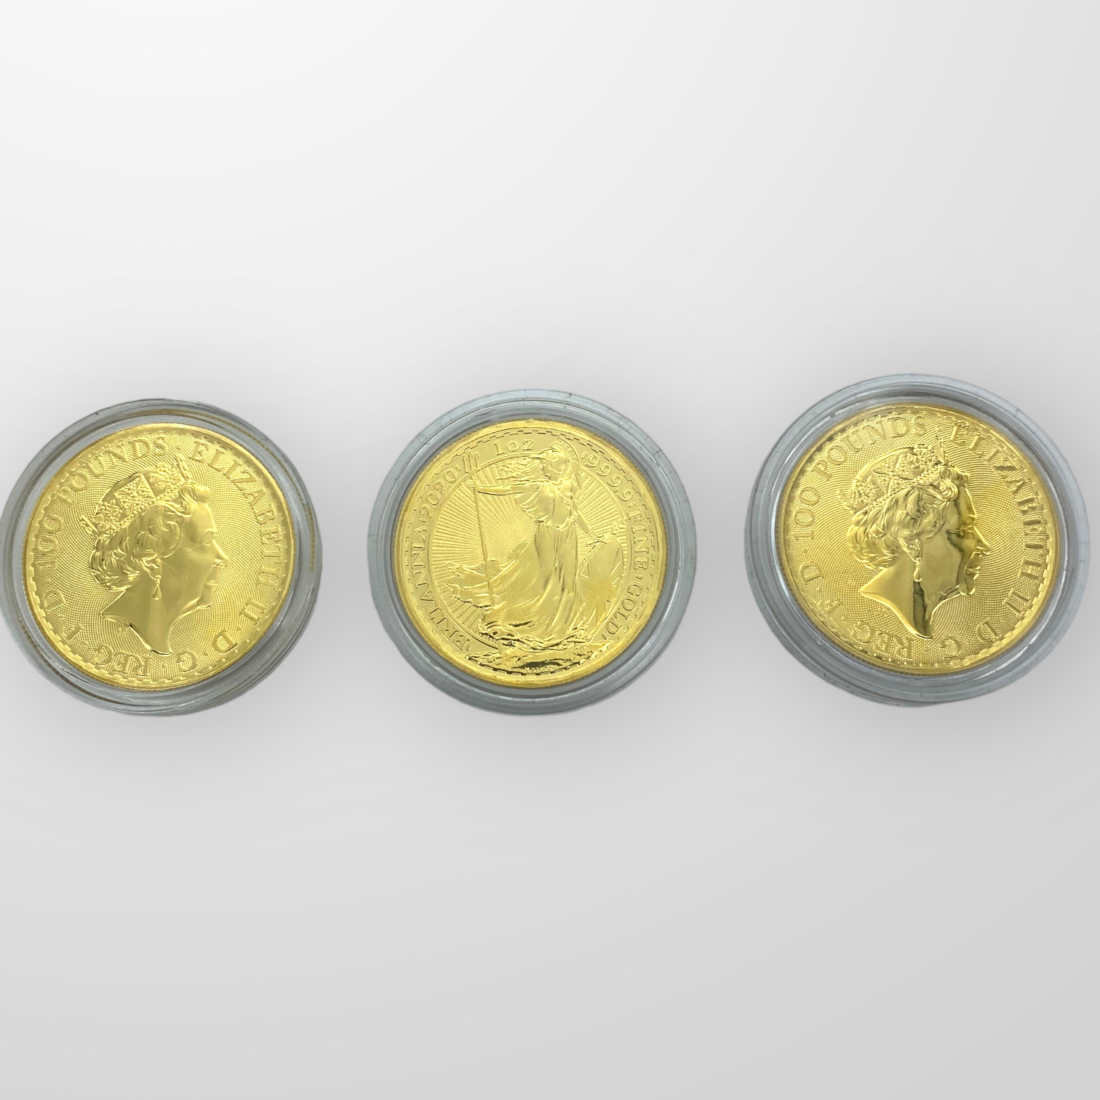 Gold Britannia Coins